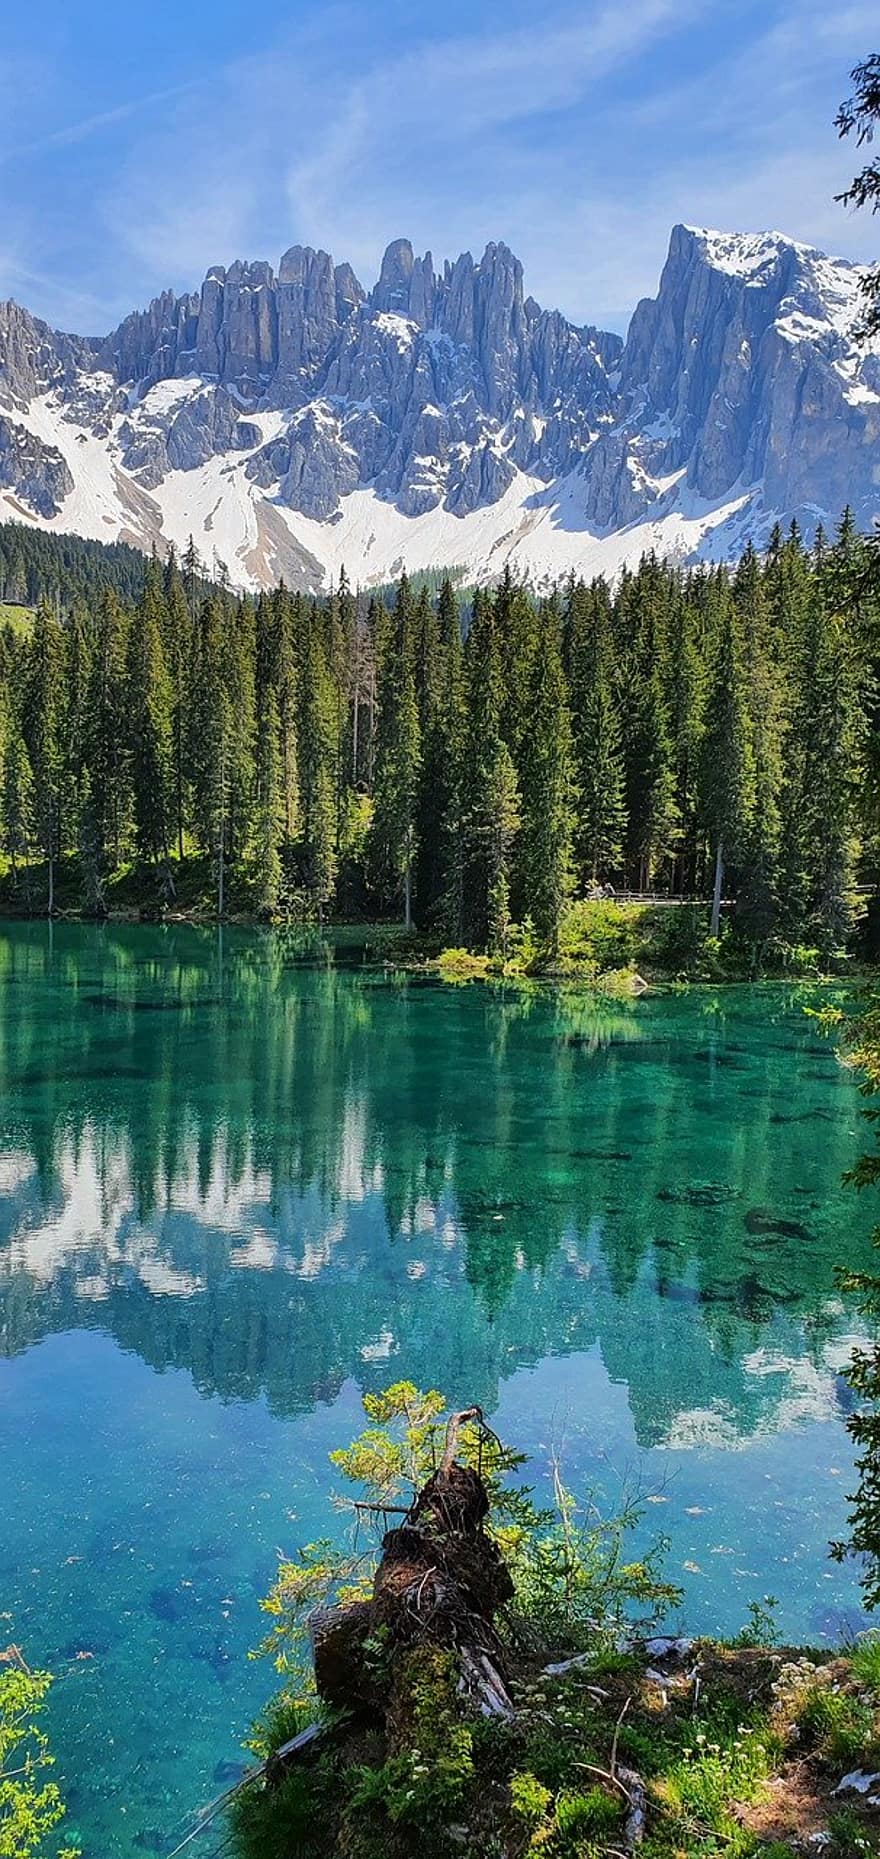 Lake Carezza, альпийское озеро, доломиты, лес, гора, пейзаж, воды, дерево, зеленого цвета, летом, синий